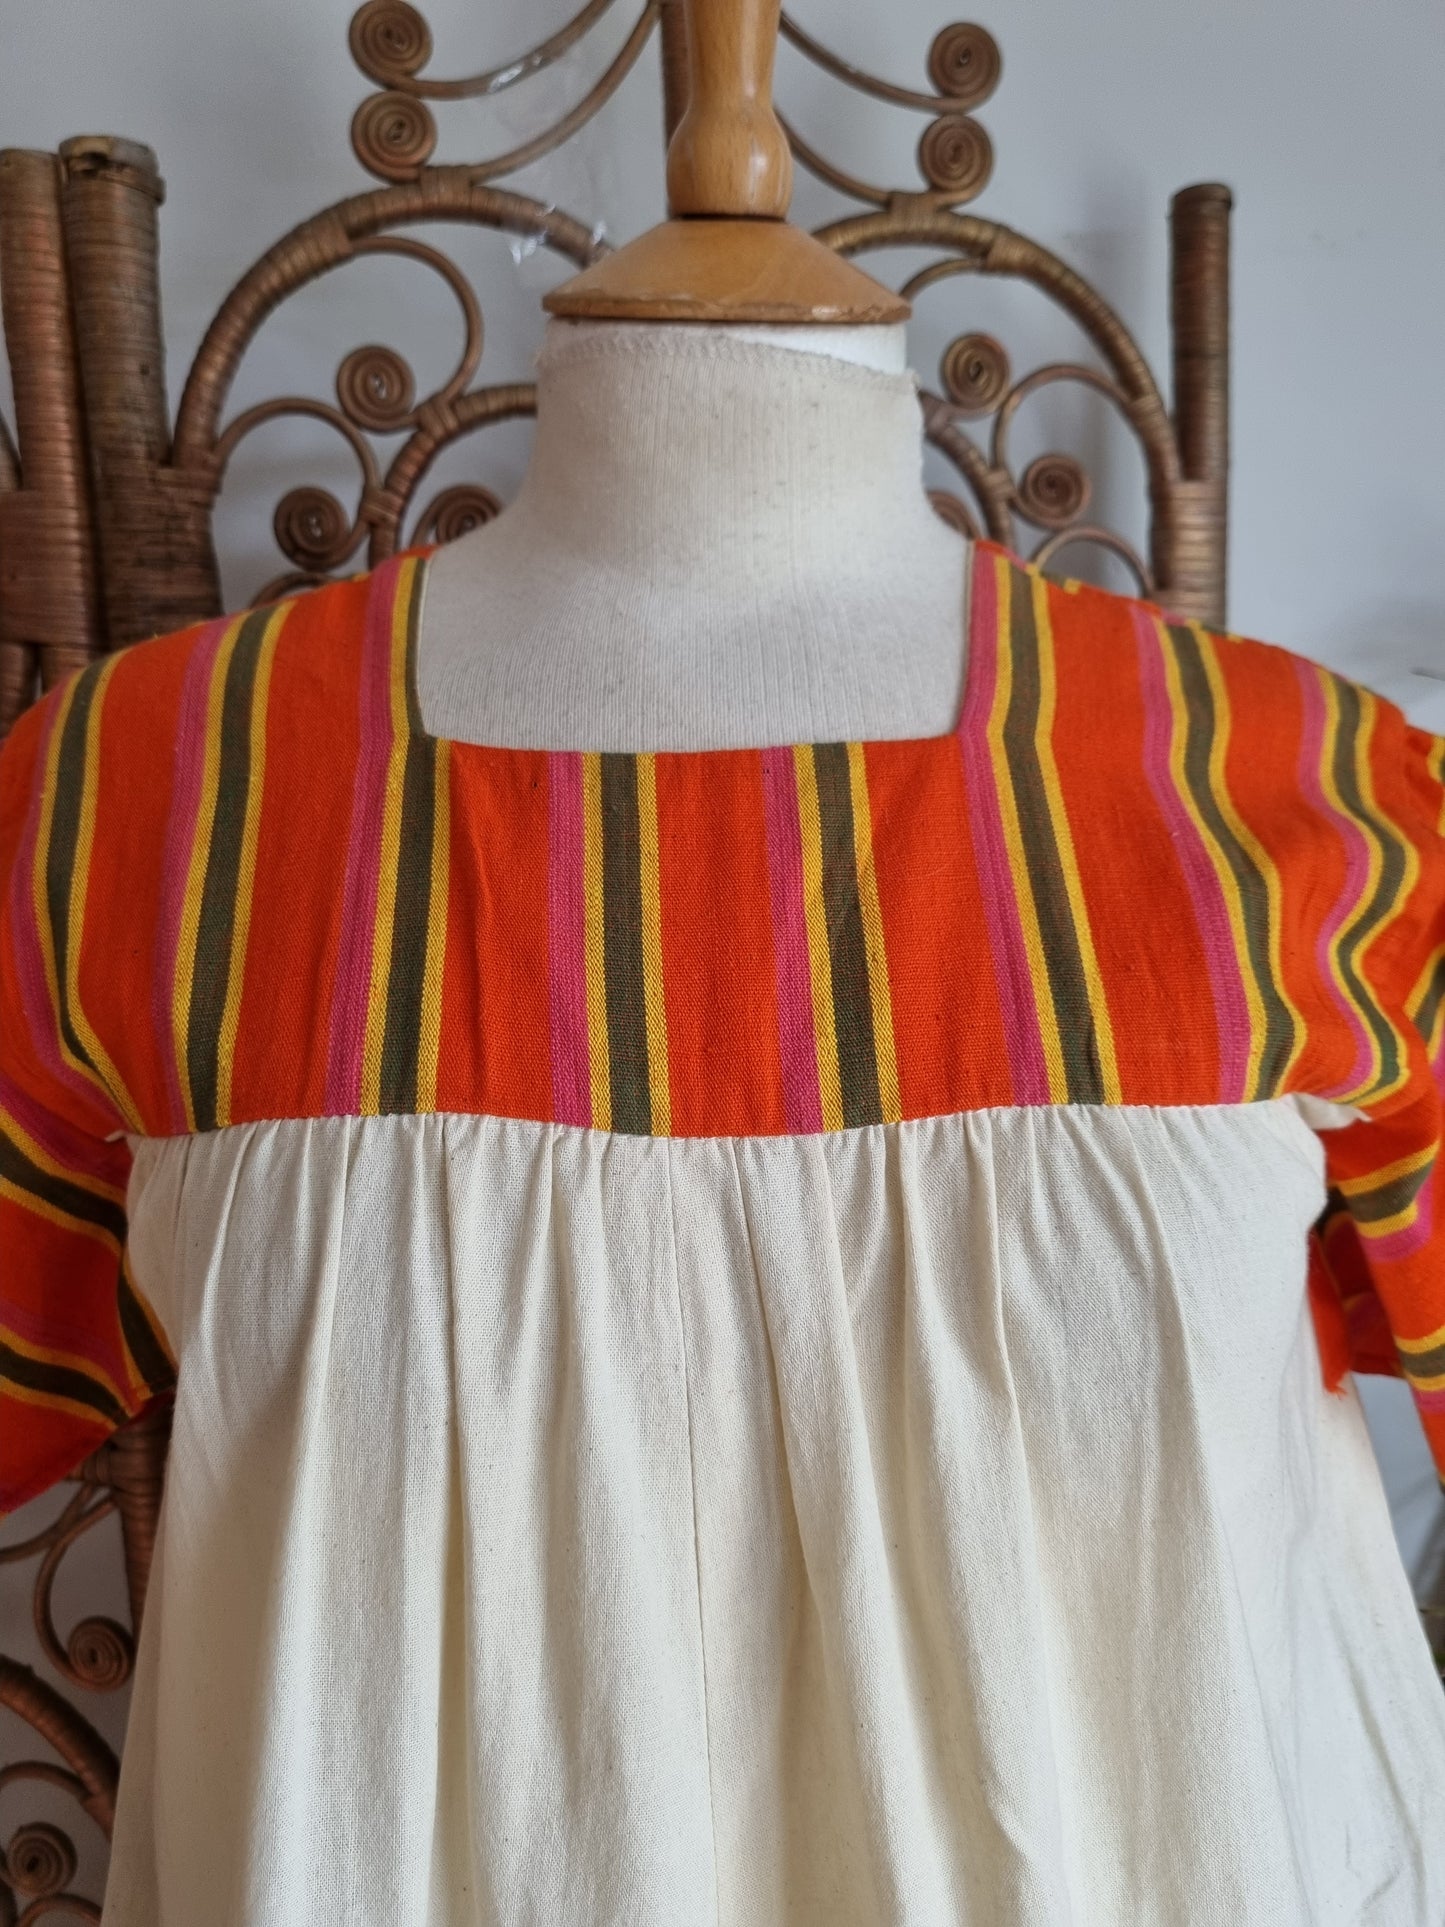 Vintage applique patchwork dress